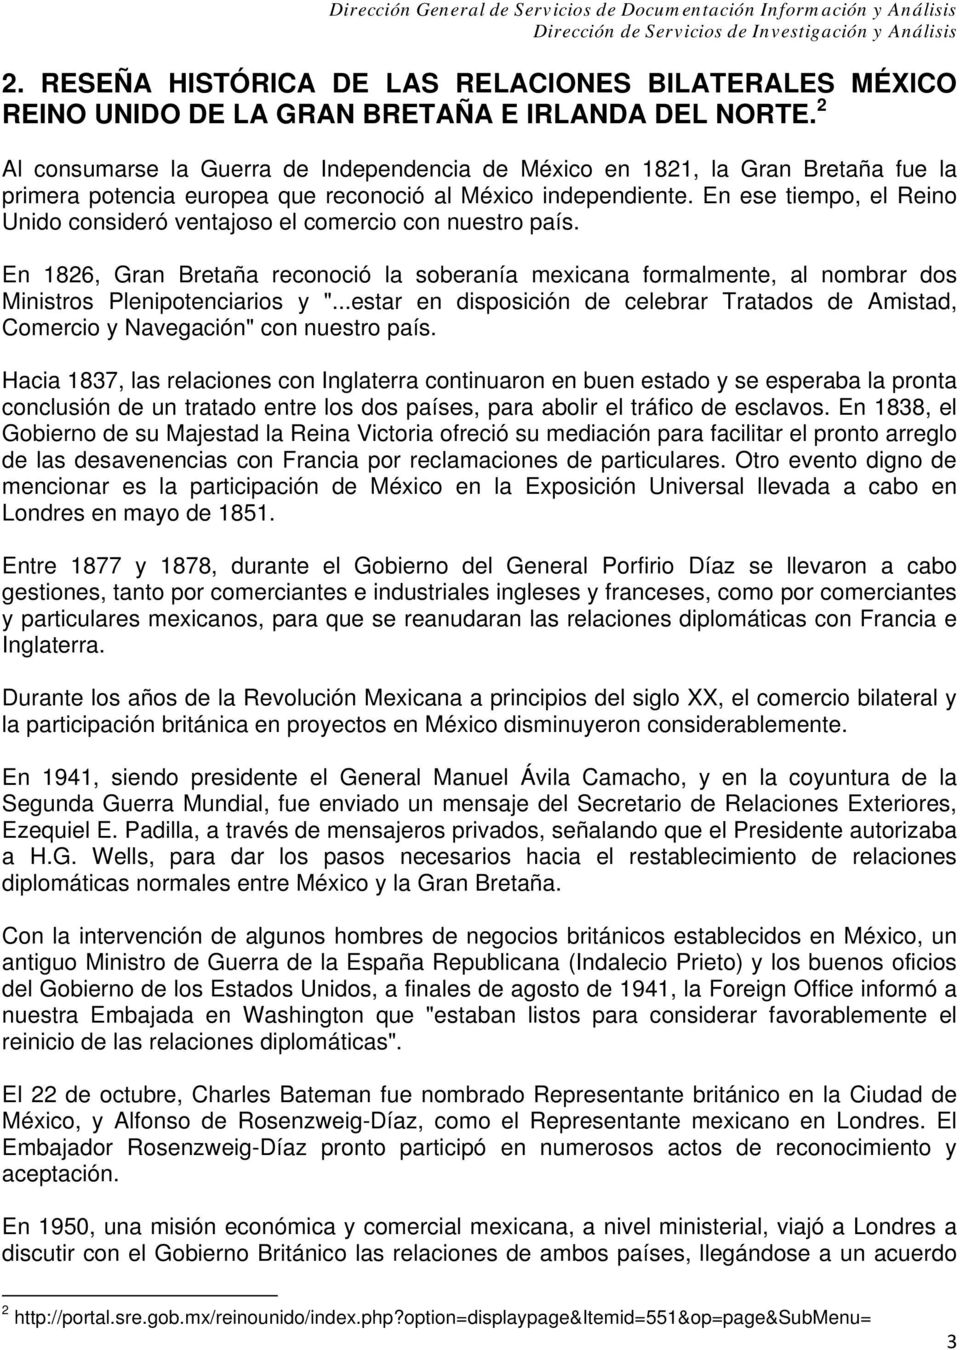 En ese tiempo, el Reino Unido consideró ventajoso el comercio con nuestro país. En 1826, Gran Bretaña reconoció la soberanía mexicana formalmente, al nombrar dos Ministros Plenipotenciarios y ".